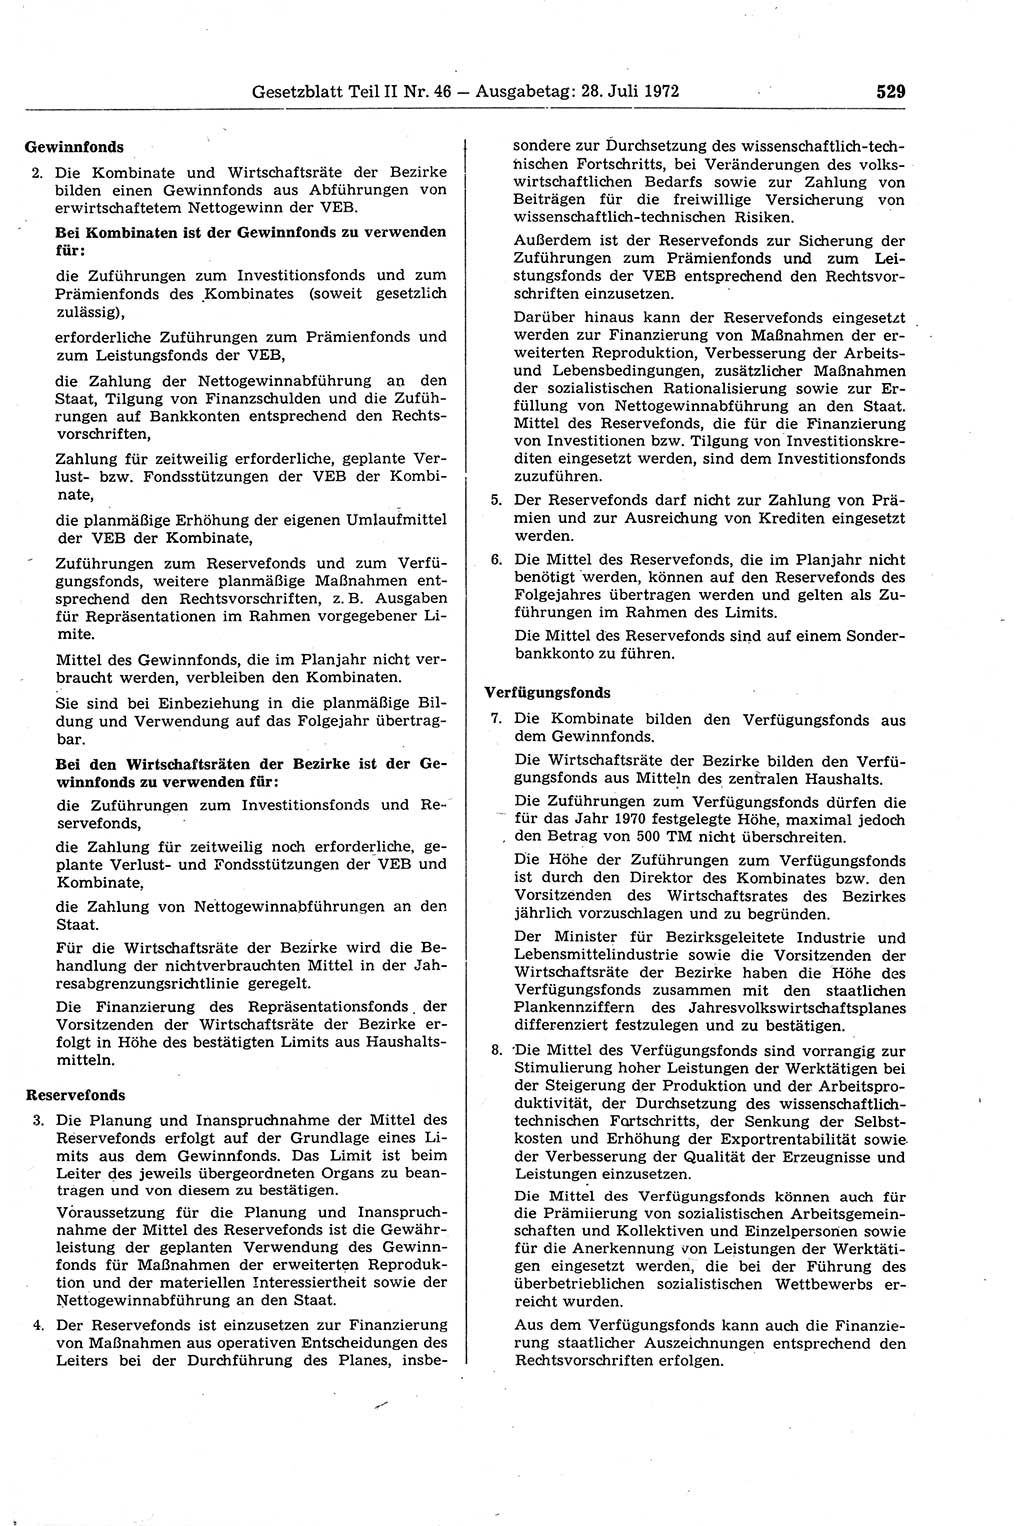 Gesetzblatt (GBl.) der Deutschen Demokratischen Republik (DDR) Teil ⅠⅠ 1972, Seite 529 (GBl. DDR ⅠⅠ 1972, S. 529)